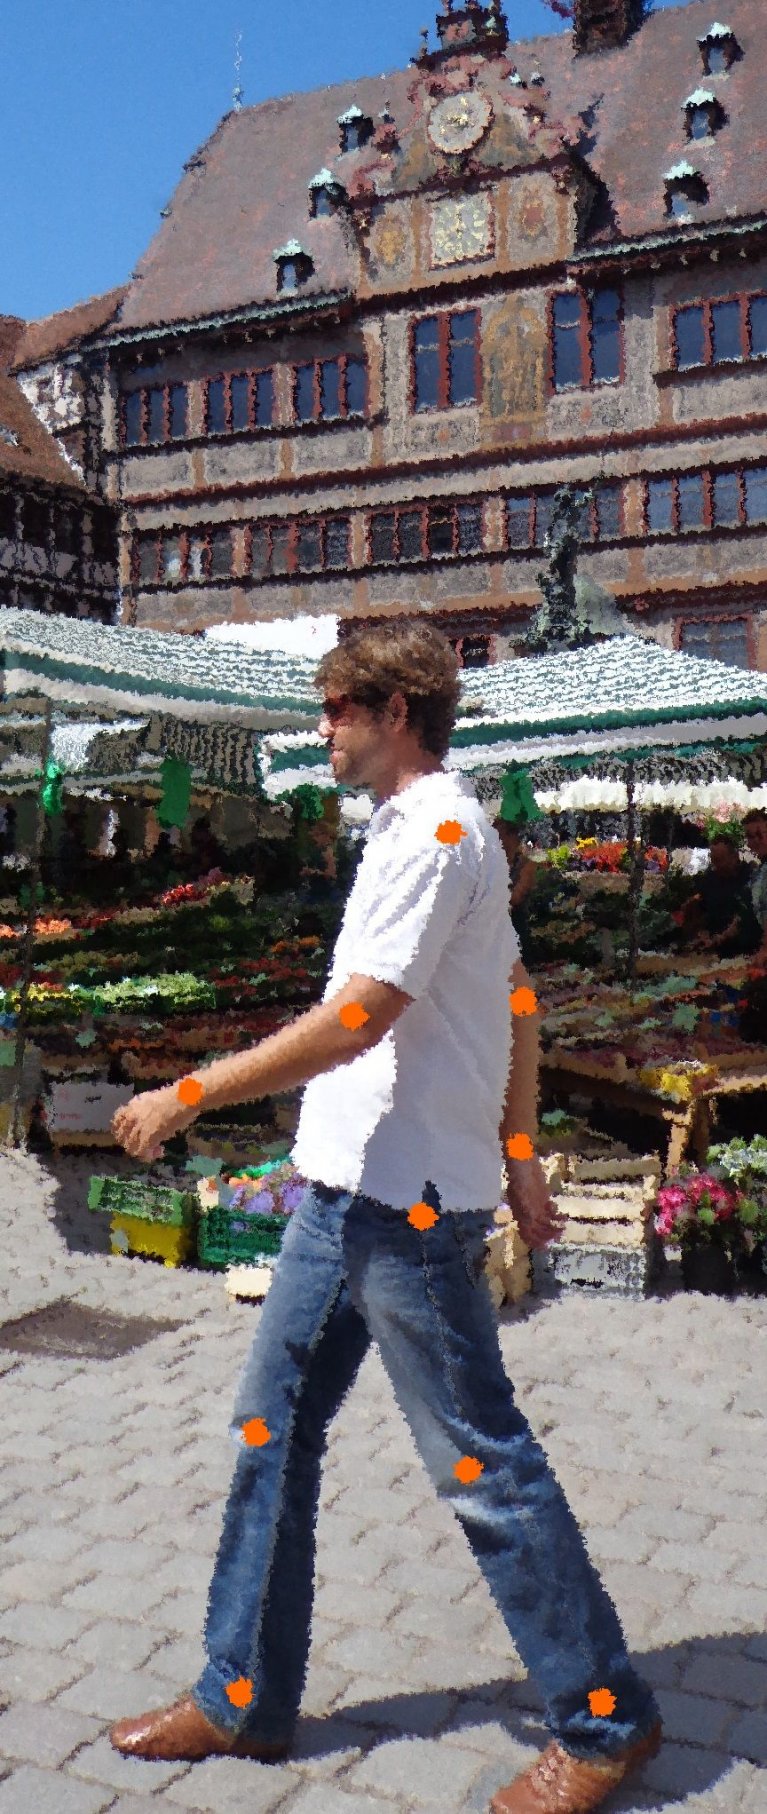 Ein Mann läuft vor einem Blumenstand auf einem Markt. Das Bild ist grobkörnig aufgenommen.